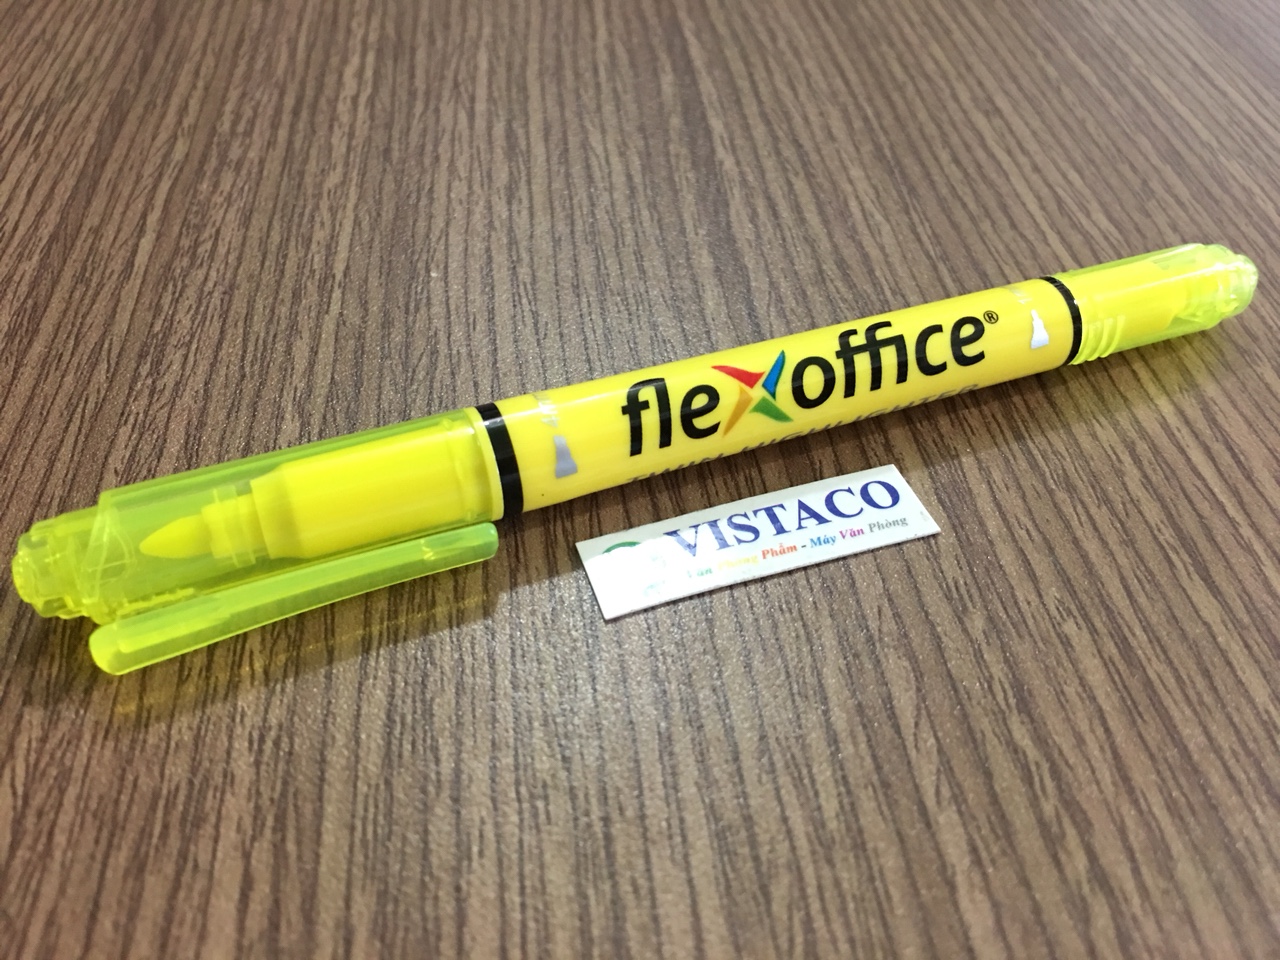 Bút dạ quang FO HL-01 Vàng Flexoffice